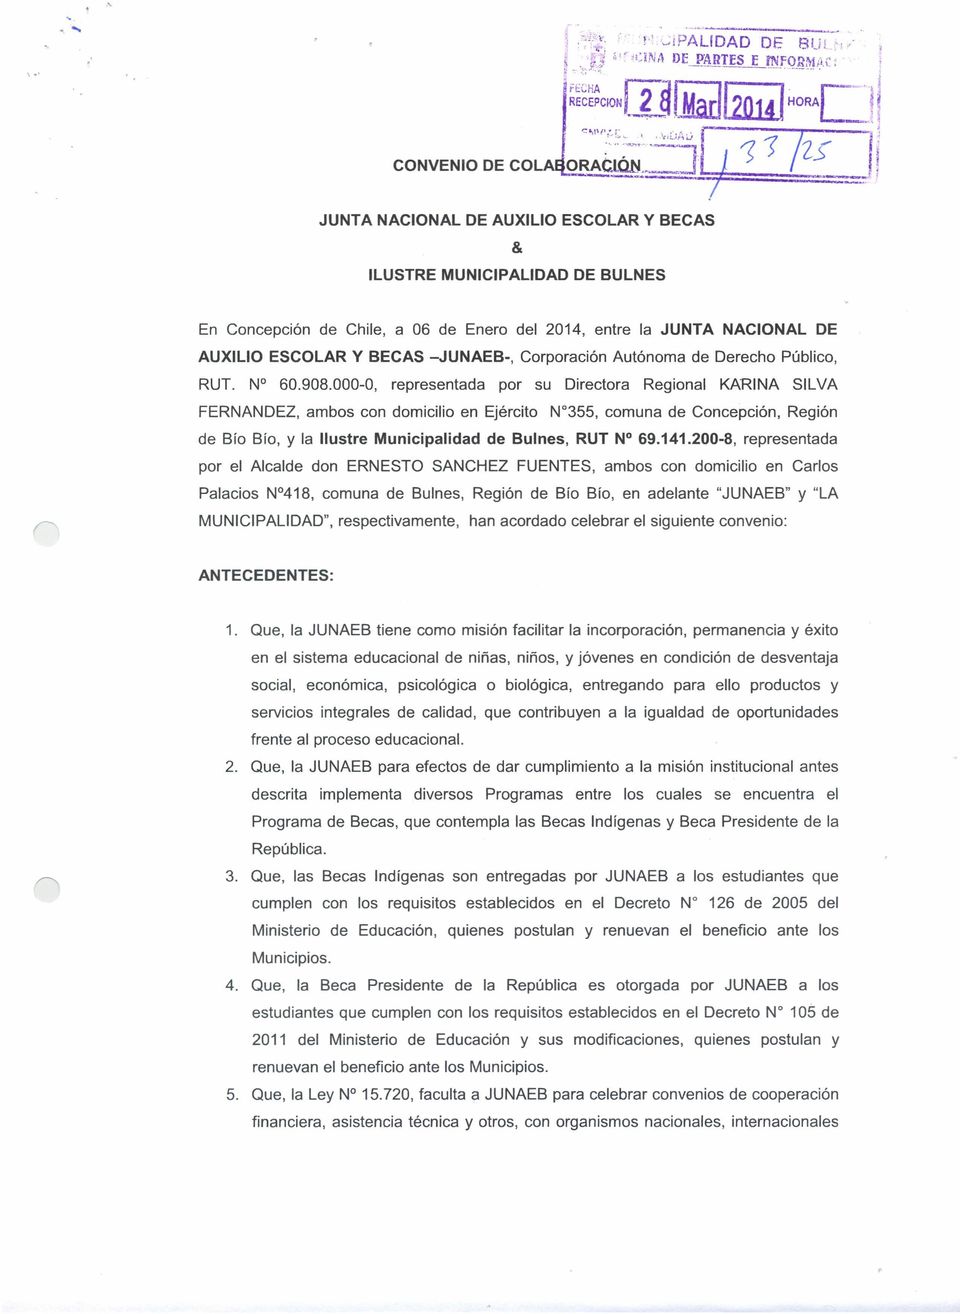 Corporación Autónoma de Derecho Público, RUT. N 60.908.